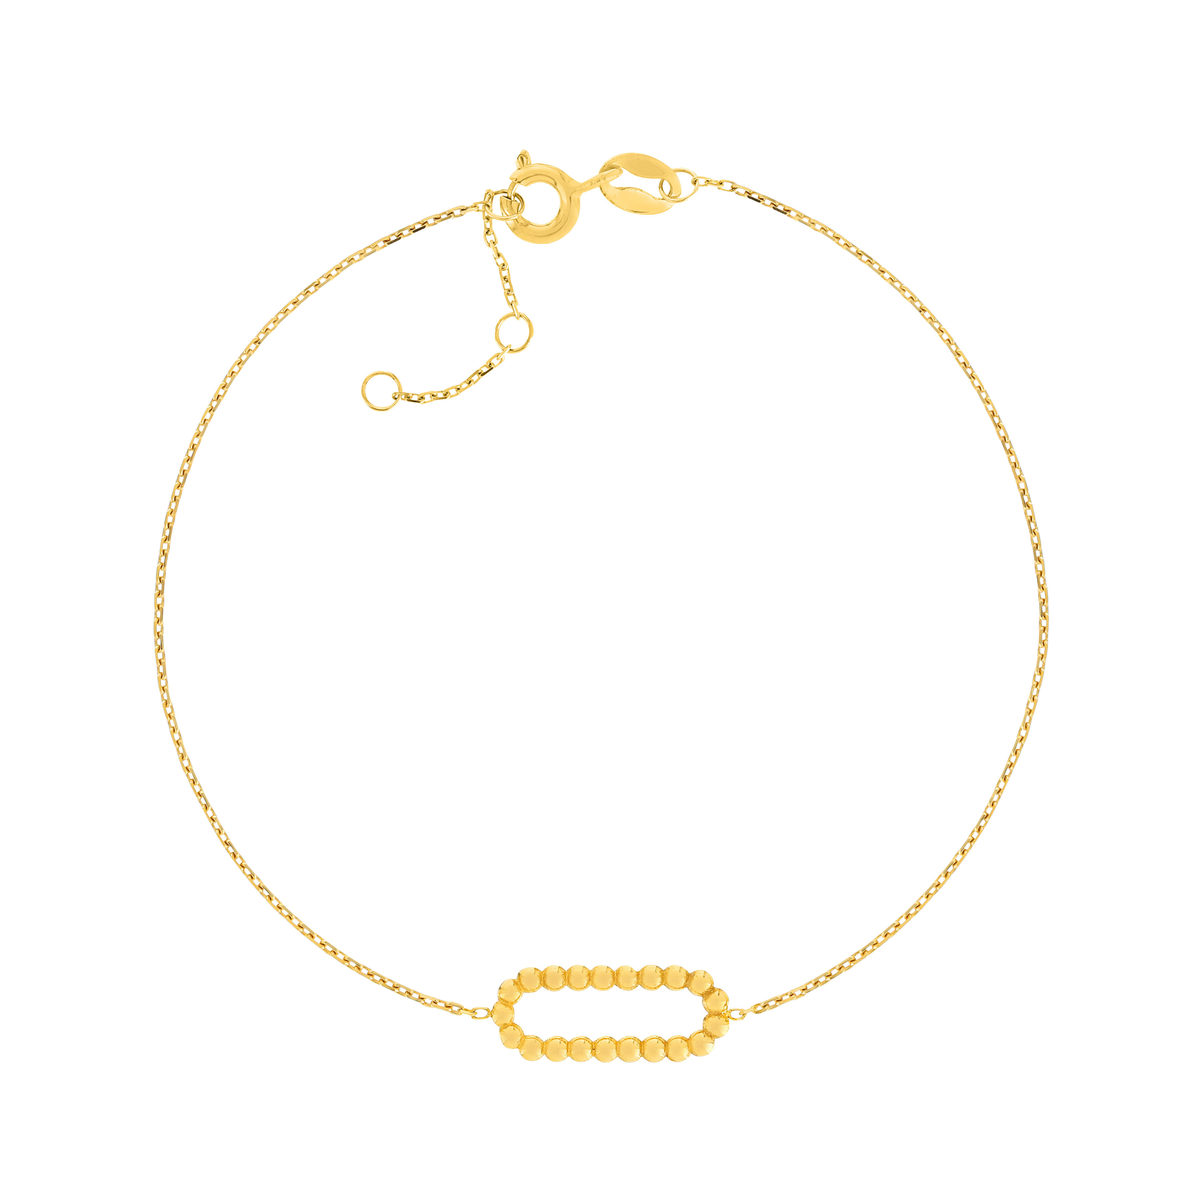 Bracelet or jaune 375, motif maillon perlé. Longueur 18,5 cm.